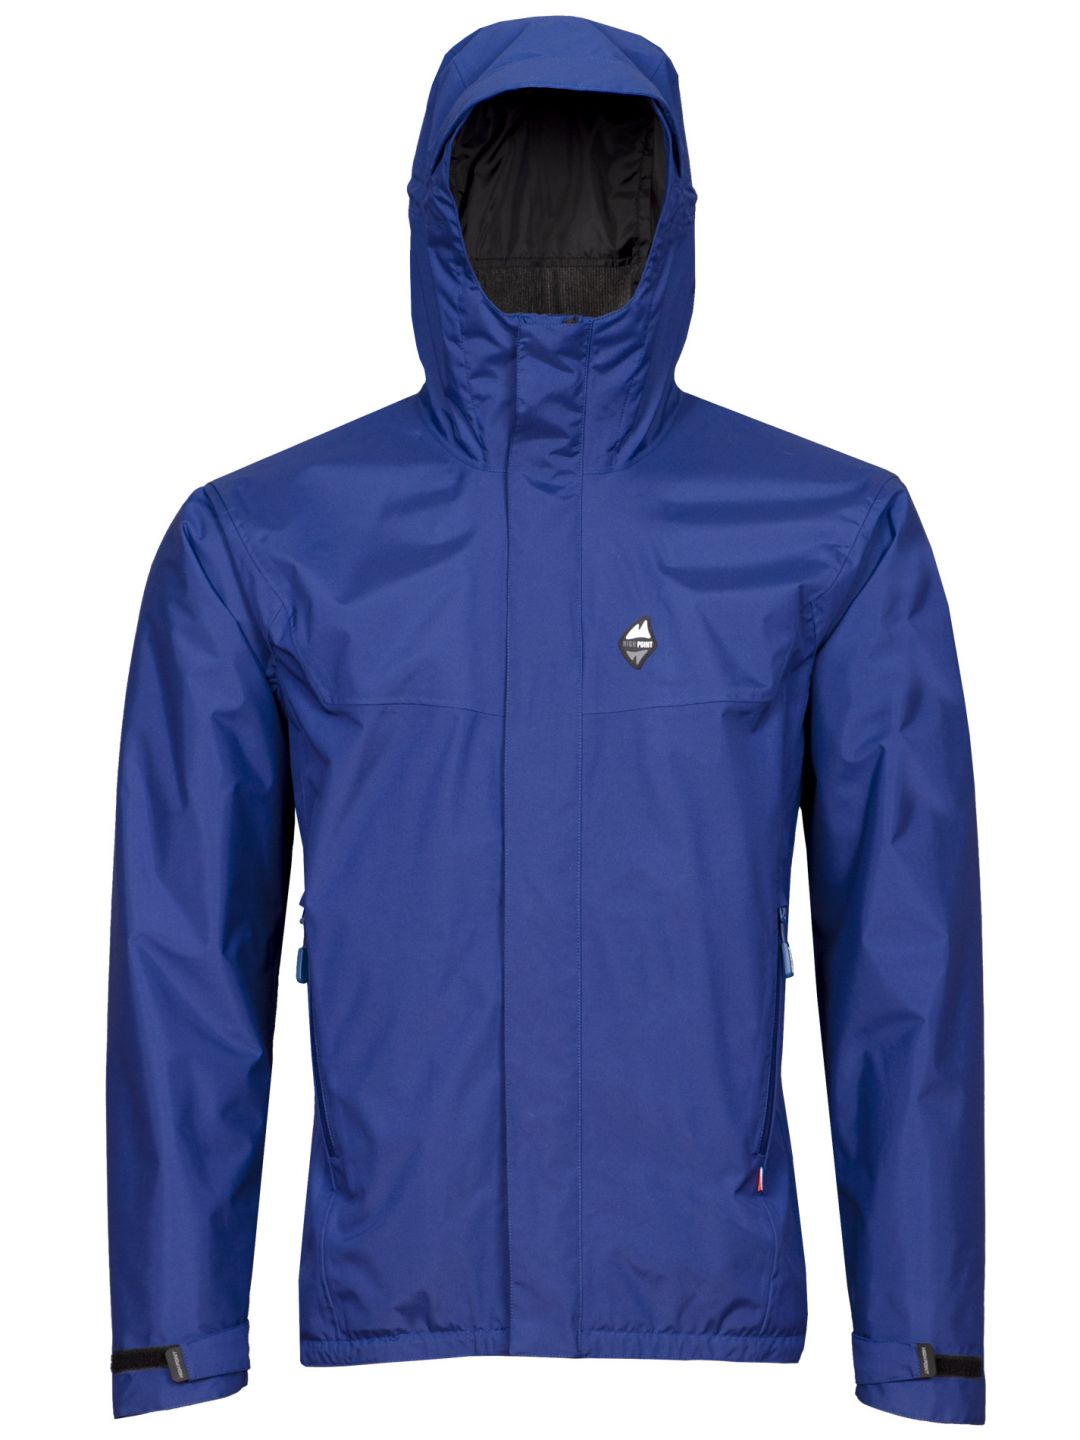 HIGH POINT MONTANUS jacket dark blue varianta: XXL